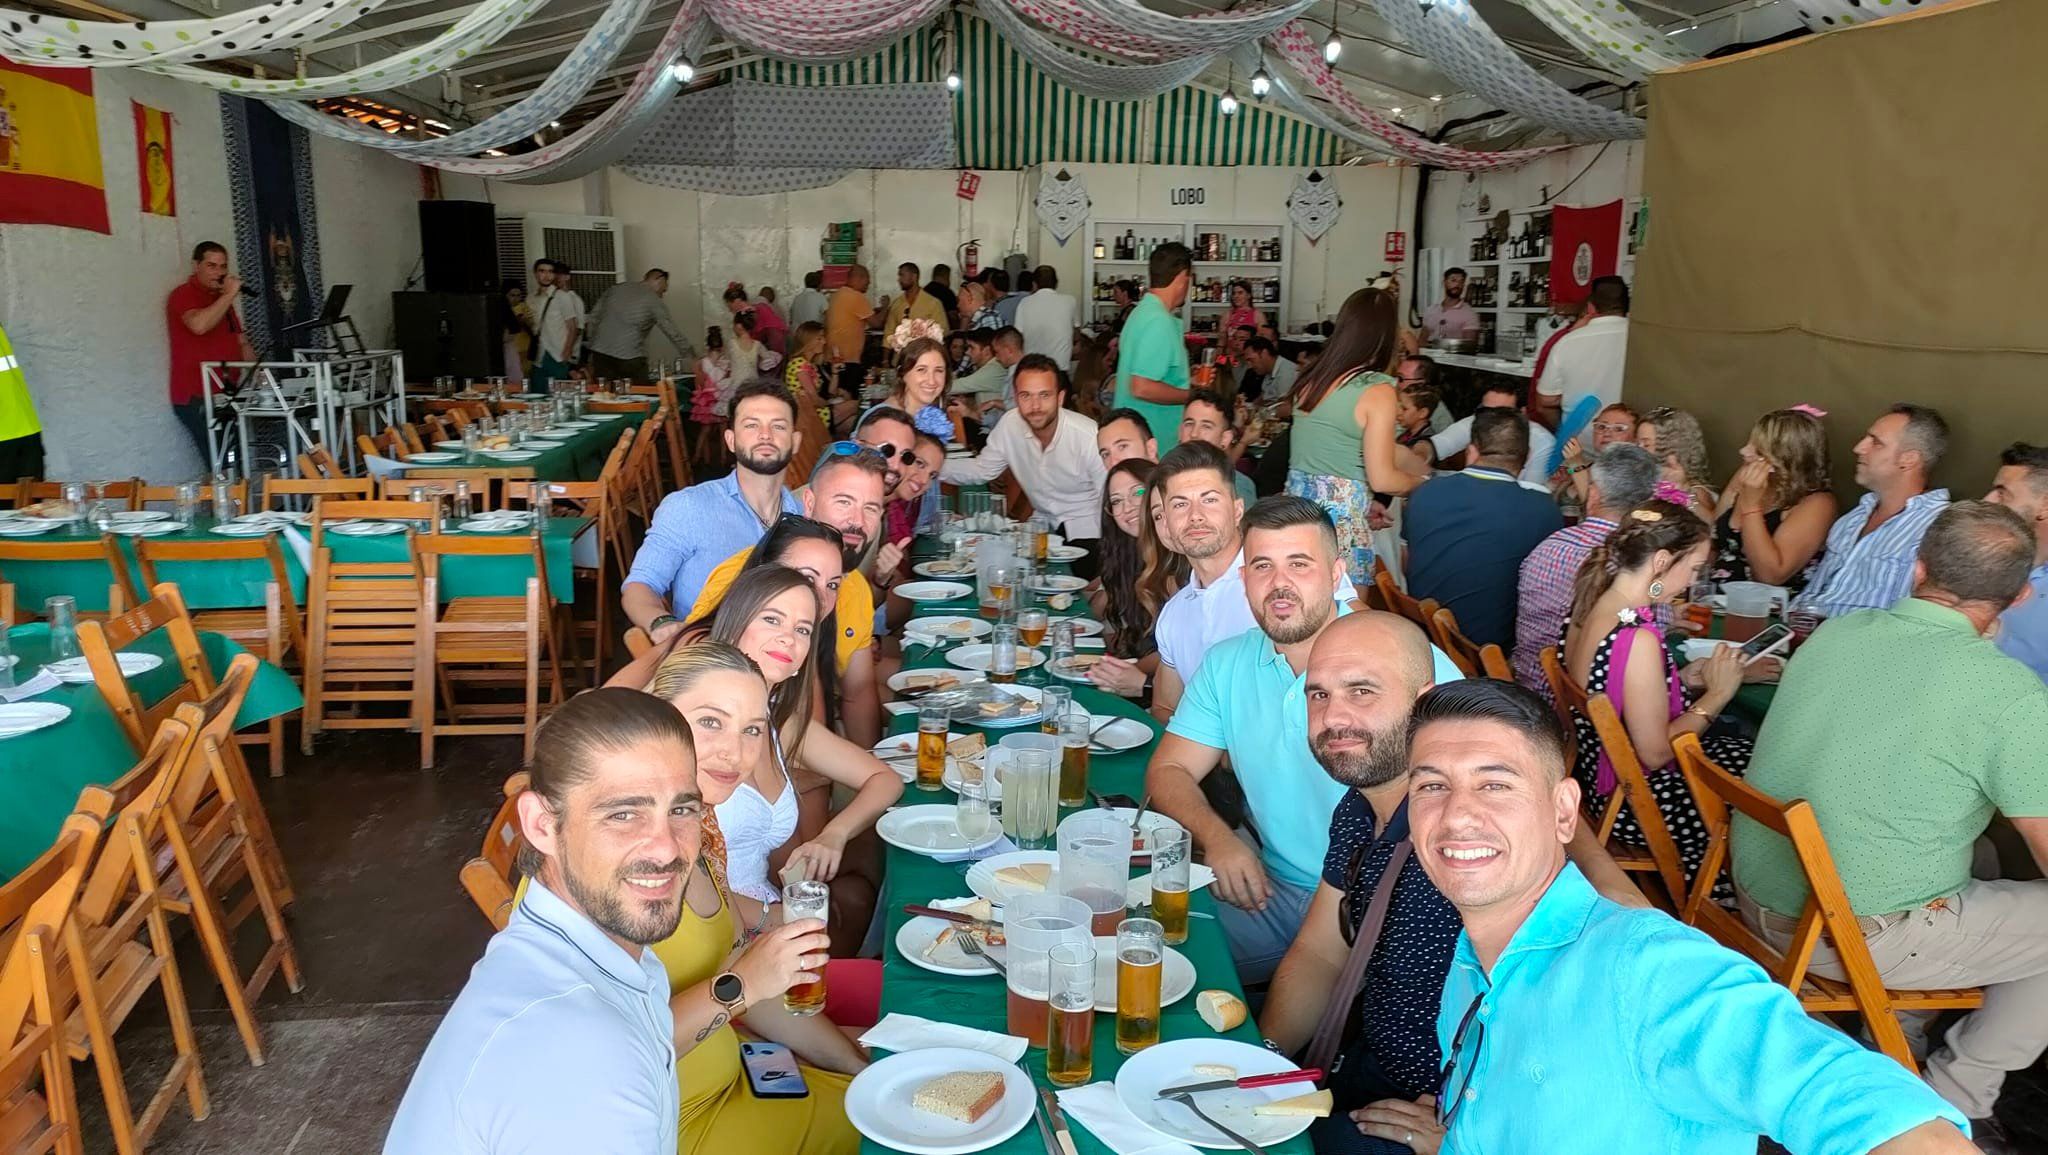 Un grupo de jóvenes almuerza en una caseta en la Feria Real de 2022.